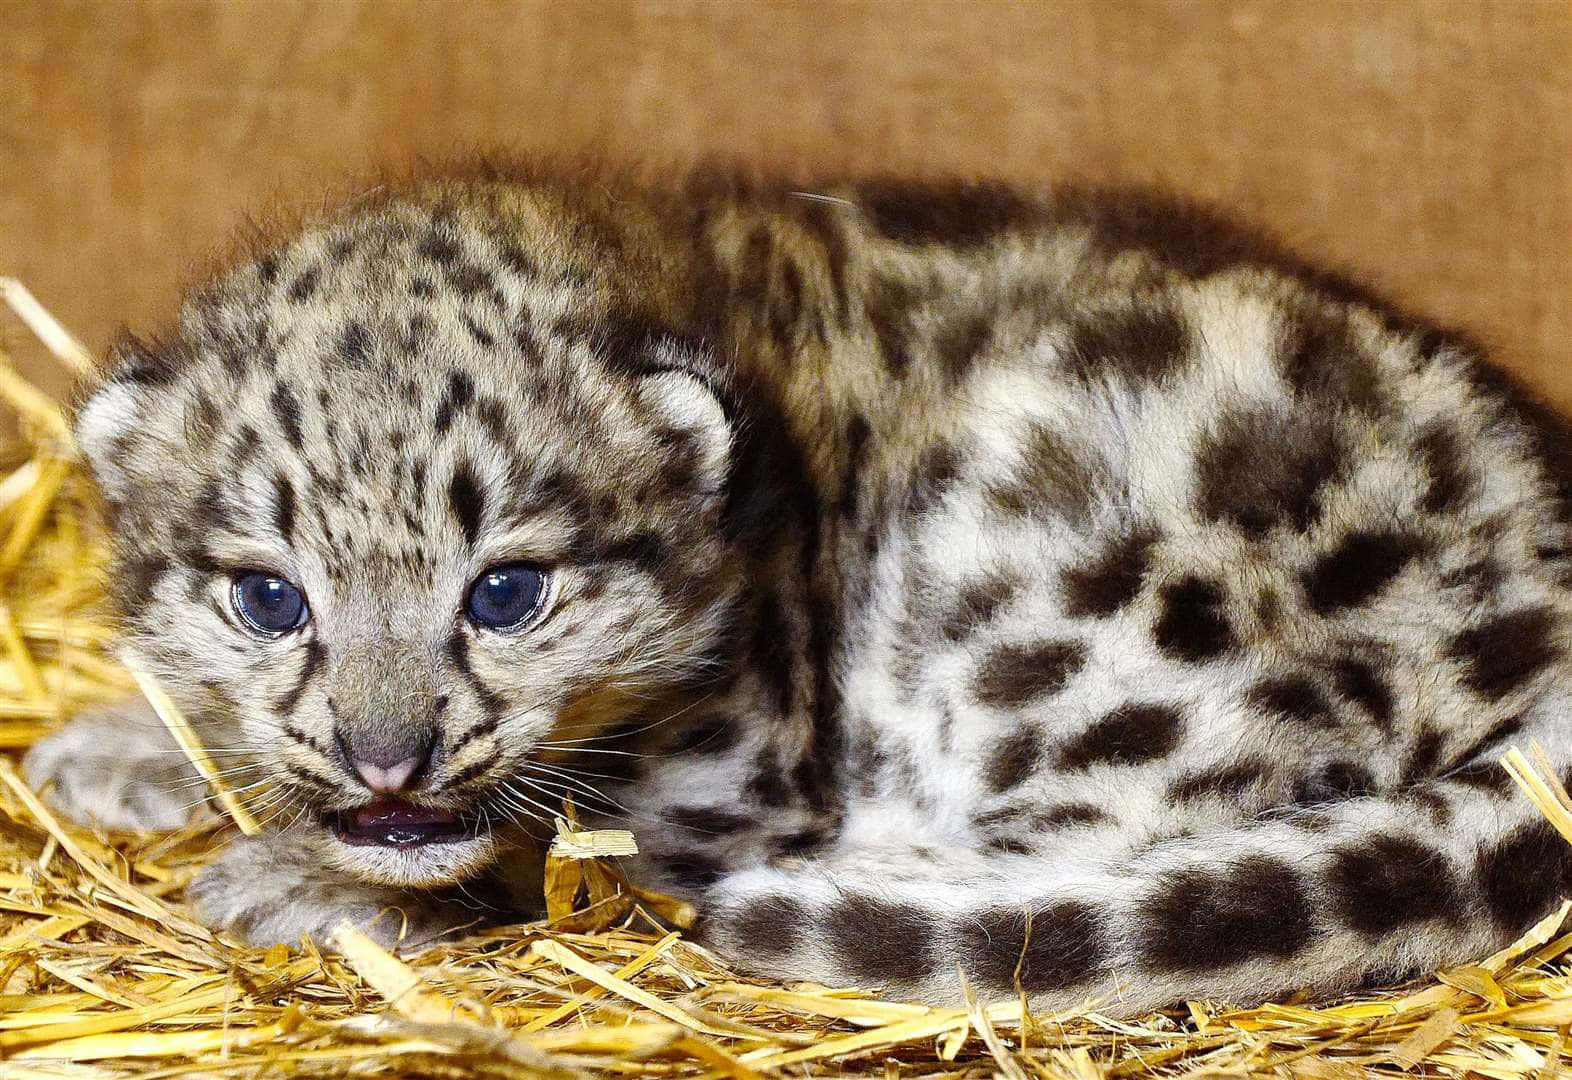 Imagende Un Leopardo Bebé Leopardo De Las Nieves Sobre Paja.